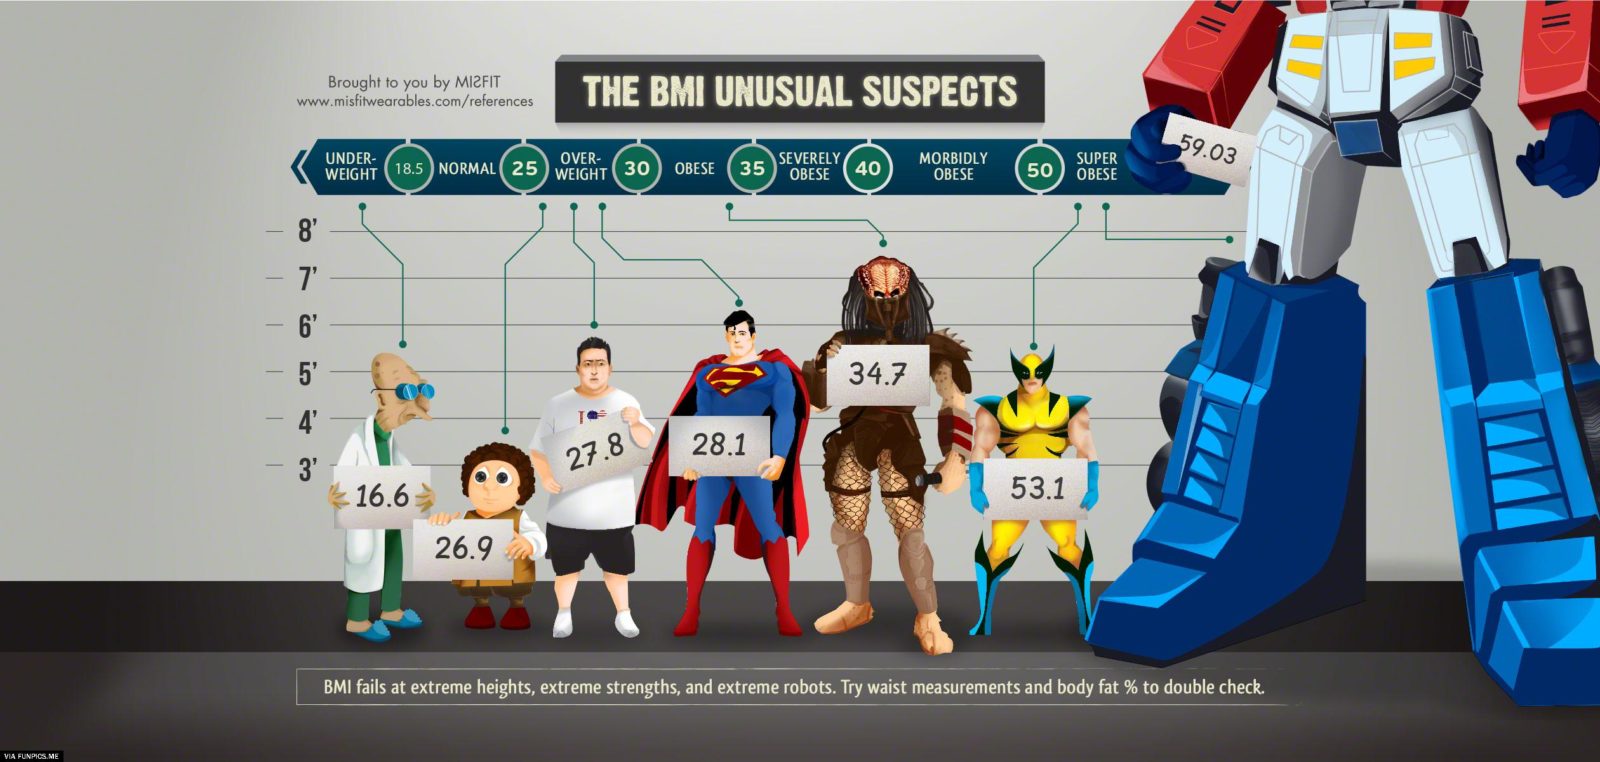 The BMI unusual suspects